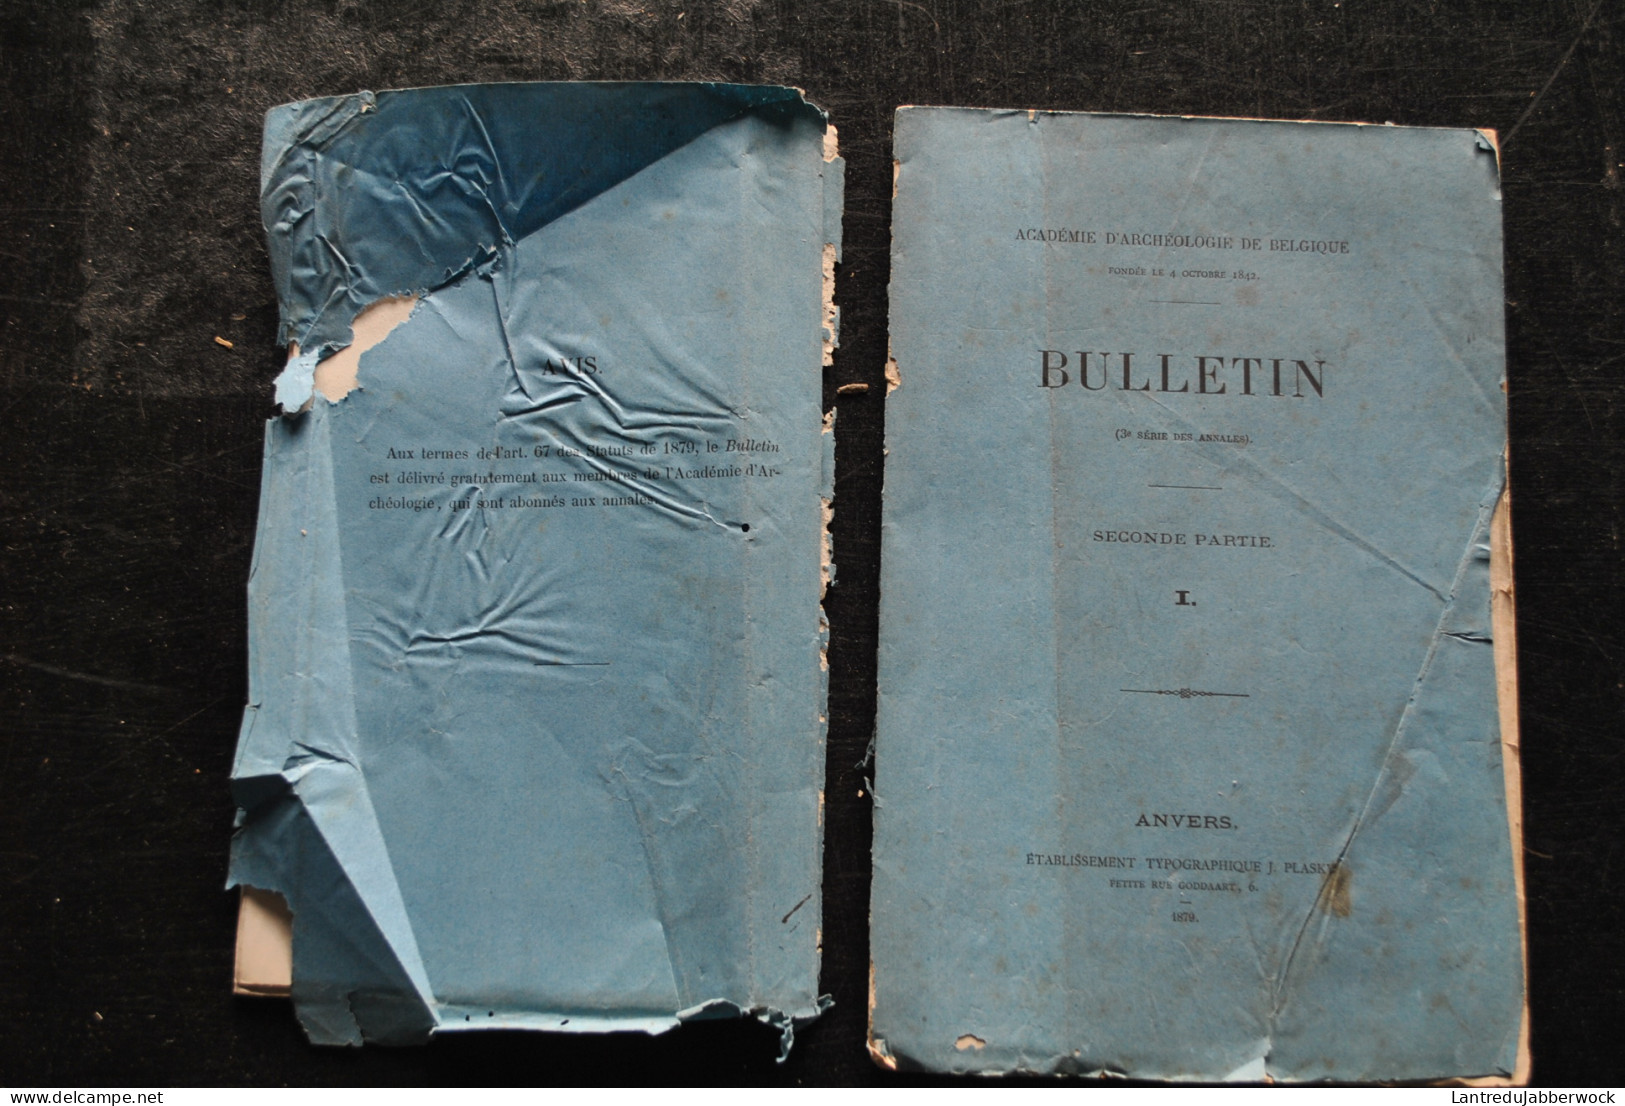 Académie D'archéologie De Belgique Bulletin 2è Partie 1 1879 La Tour Bleue D'Anvers Colonel WAUWERMANS + Plans Cartes  - België